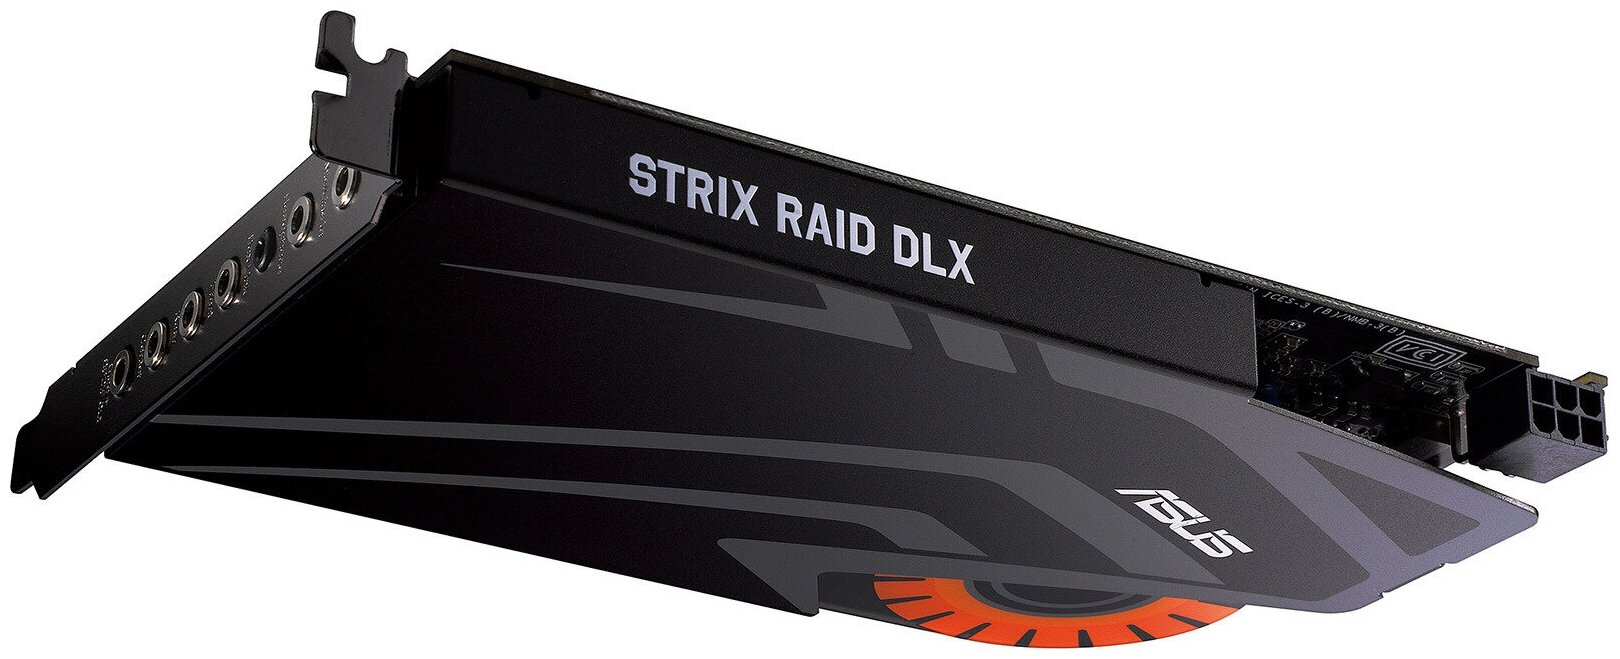 Внутренняя звуковая карта с дополнительным блоком ASUS Strix Raid DLX Retail